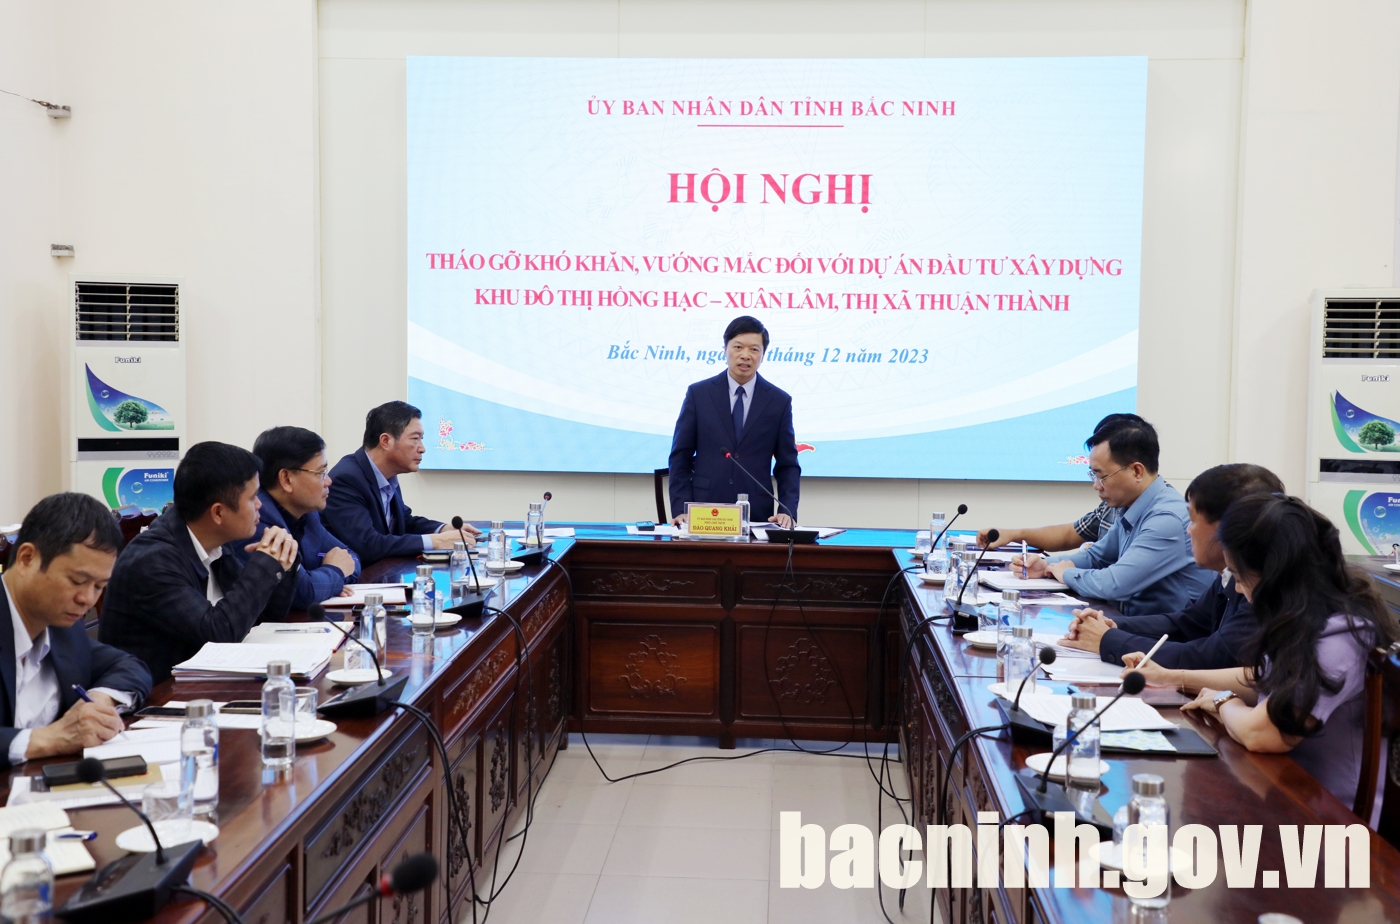 UBND tỉnh tháo gỡ khó khăn, vướng mắc dự án ĐTXD Khu đô thị Hồng Hạc - Xuân Lâm